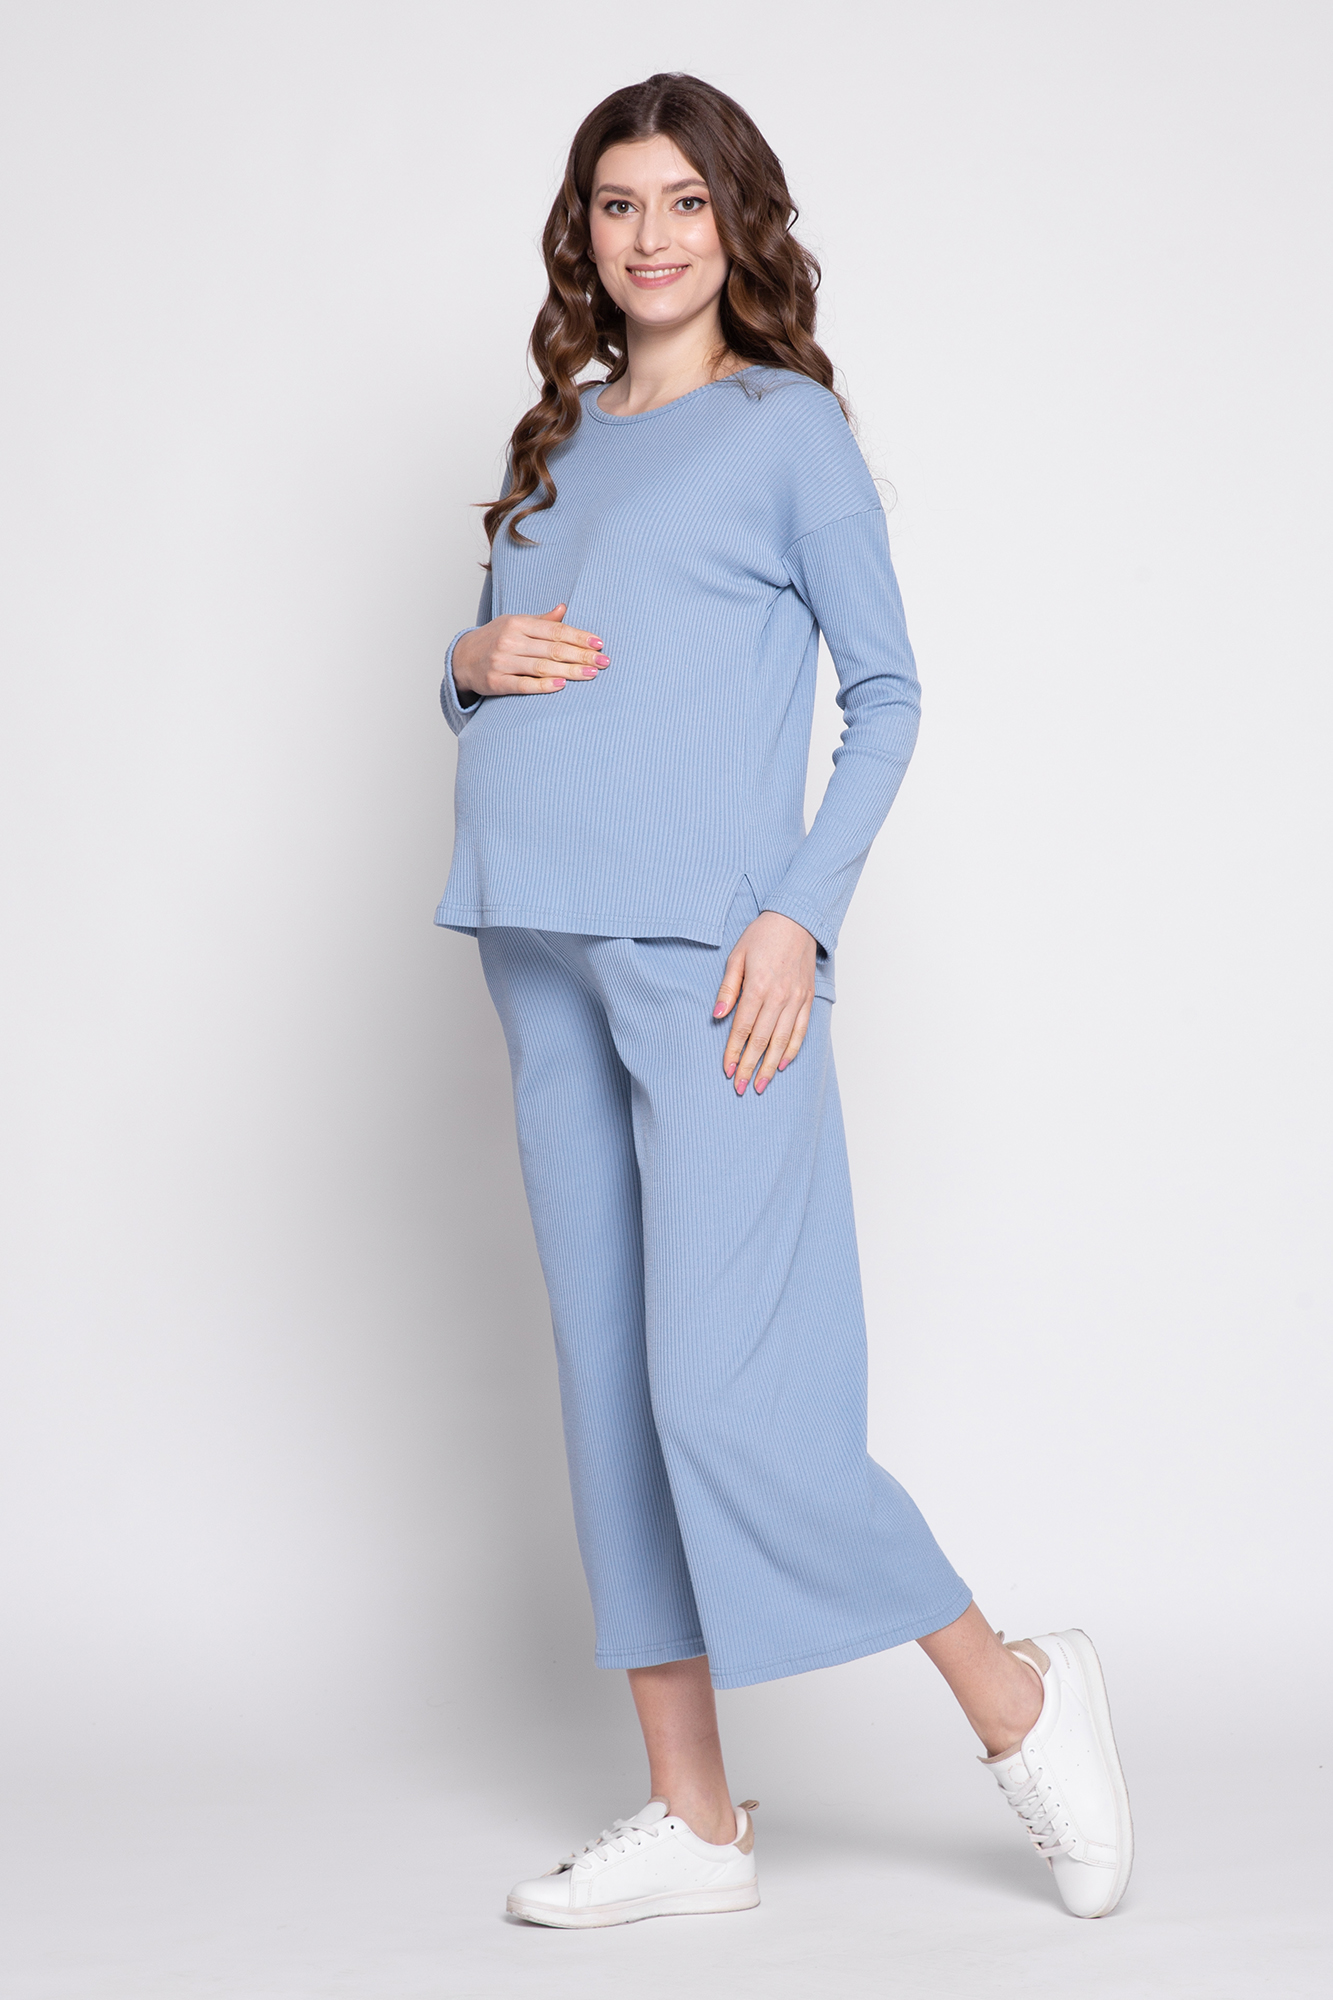 Костюм для беременных женский Magica bellezza 0184а голубой 46 RU